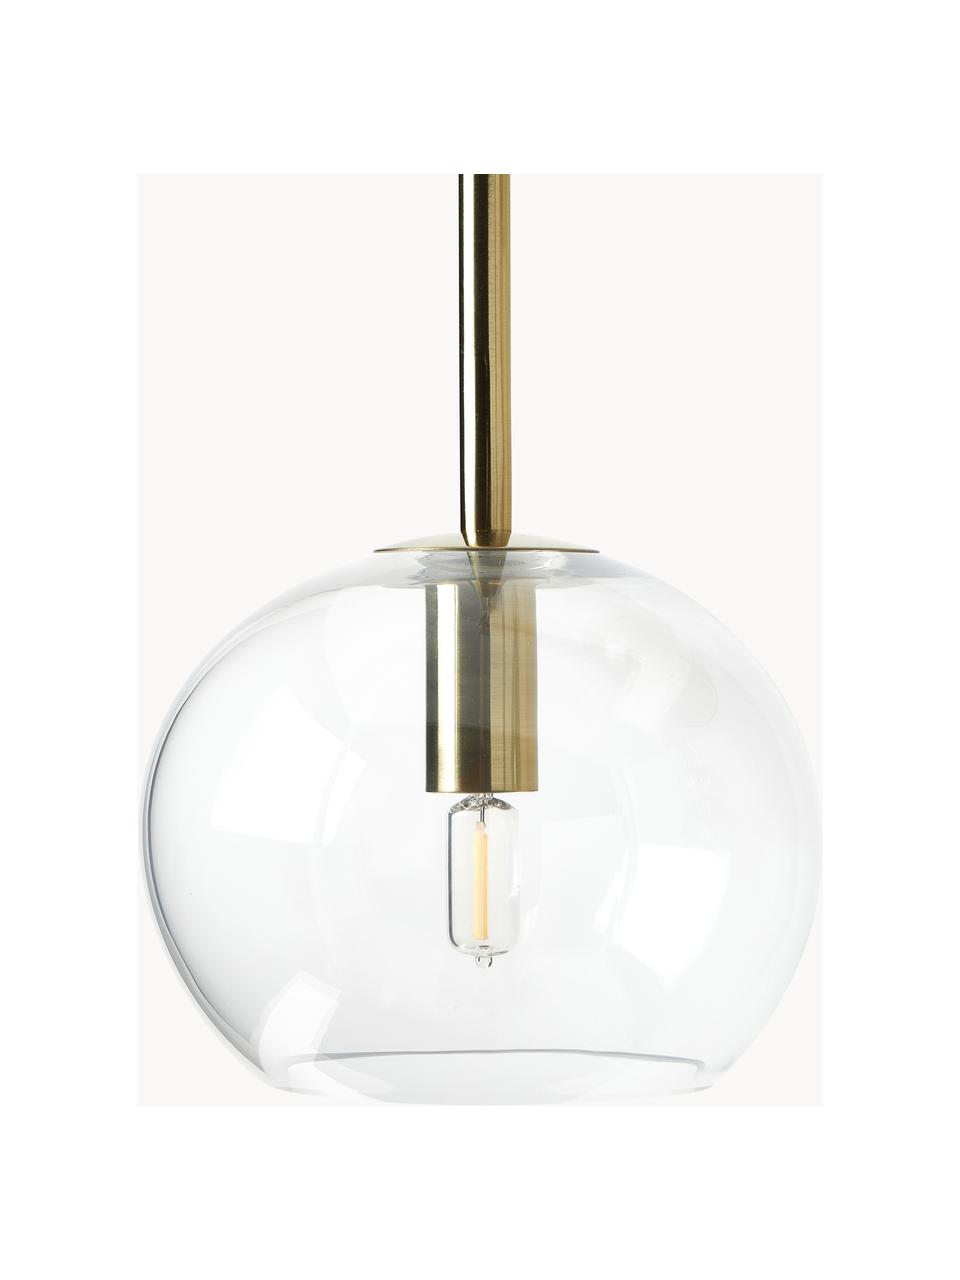 Grote hanglamp met glazen bollen Raquel, Meerkleurig, transparant, B 115 x H 150 cm